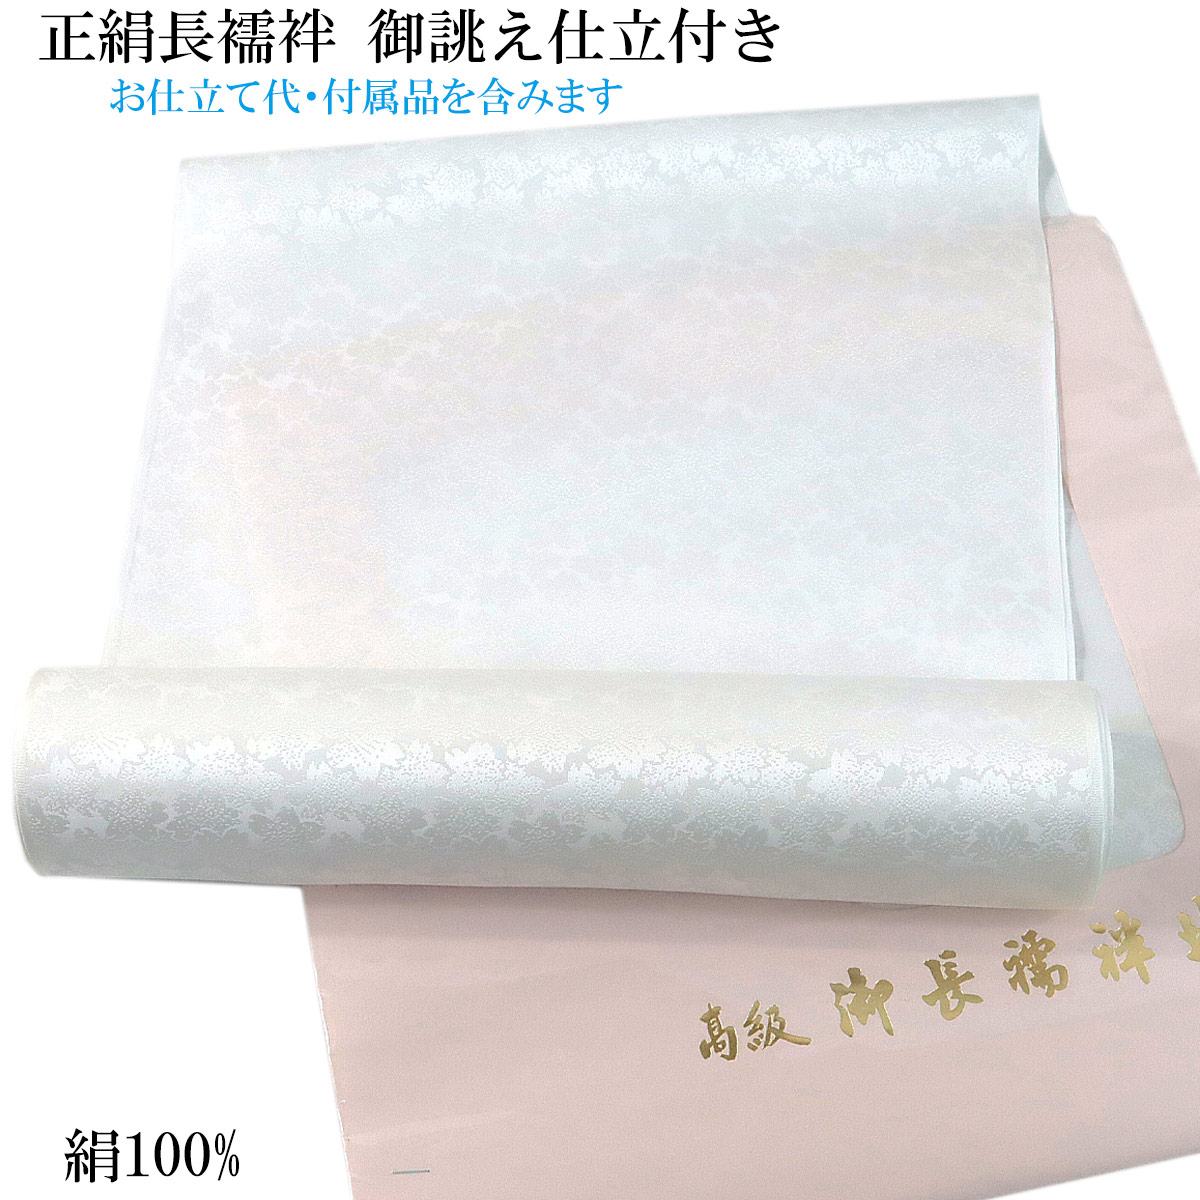 【楽天市場】長襦袢 反物 正絹 -8- シルエール ホワイト 白 礼装用 紋 